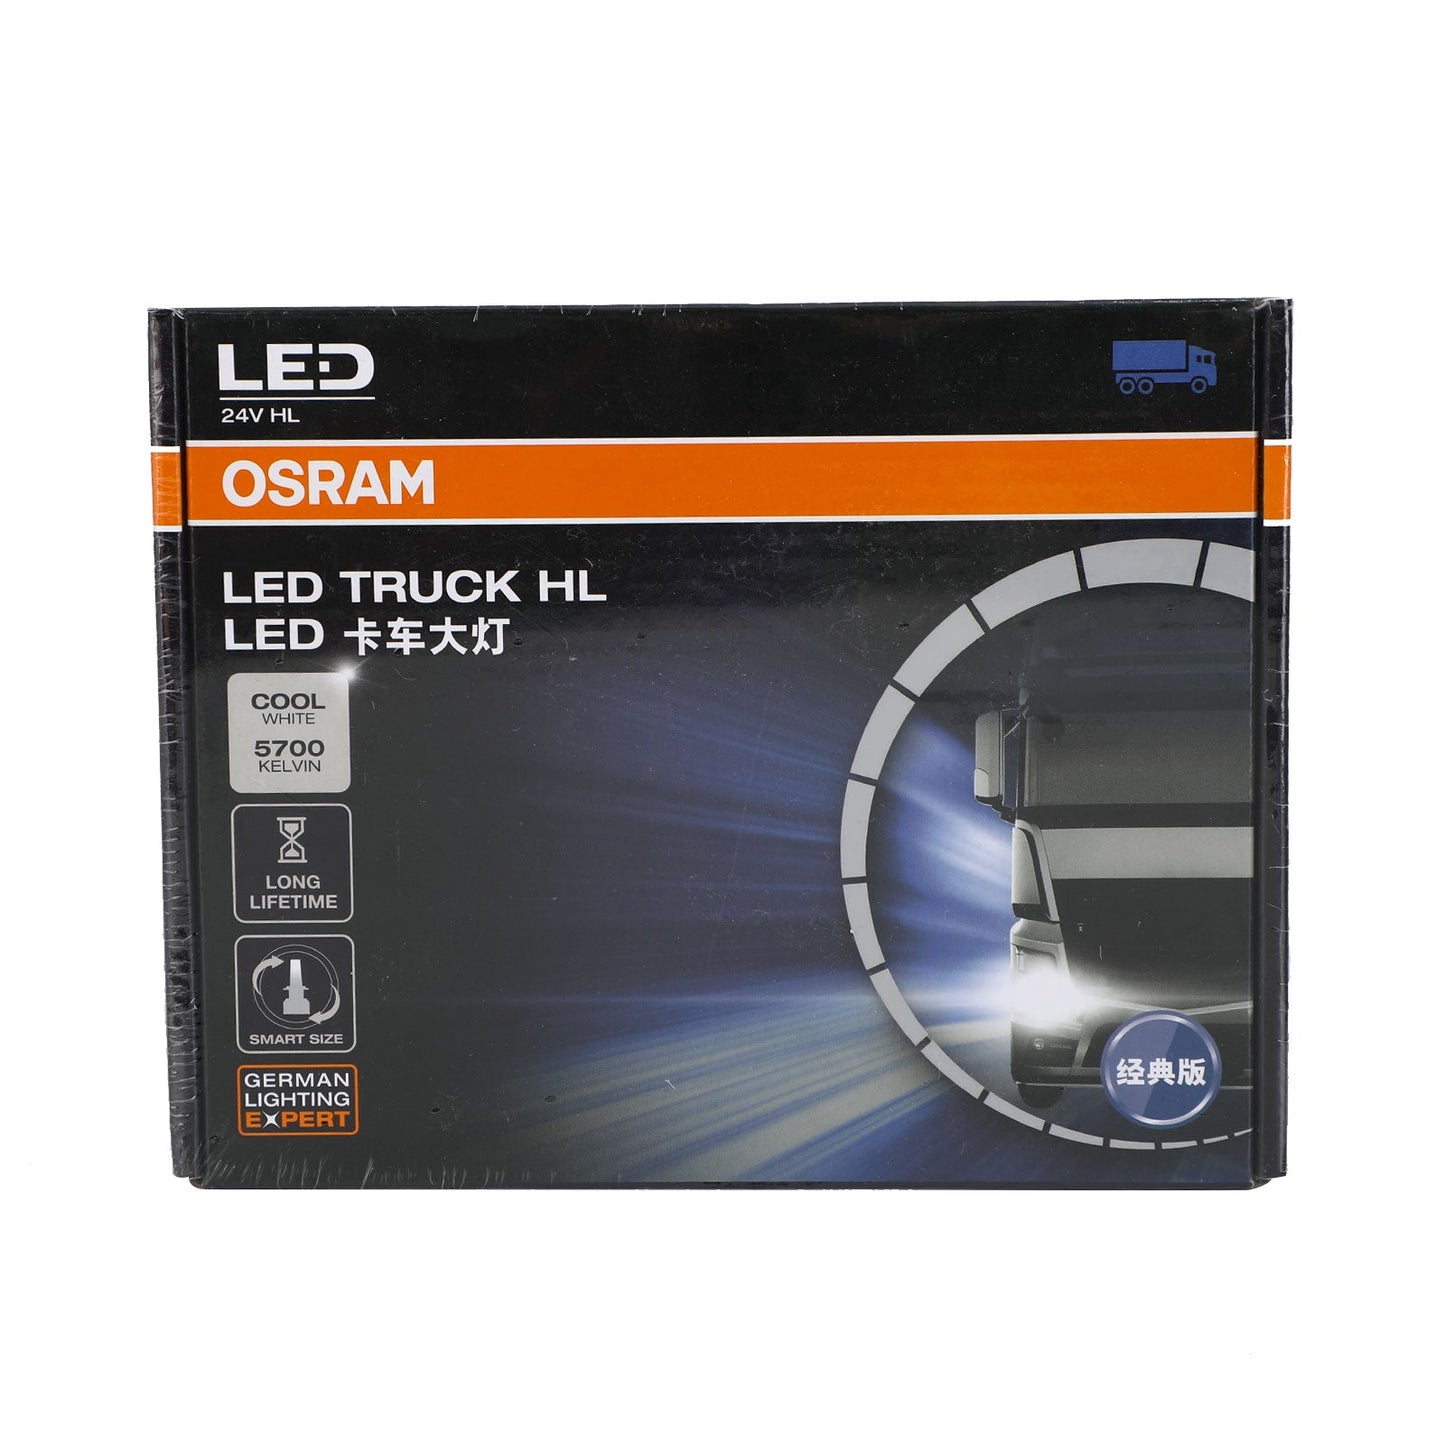 82241CW For OSRAM LED Truck Headlight Lamp H1 24V28W Cool White Light 5700K